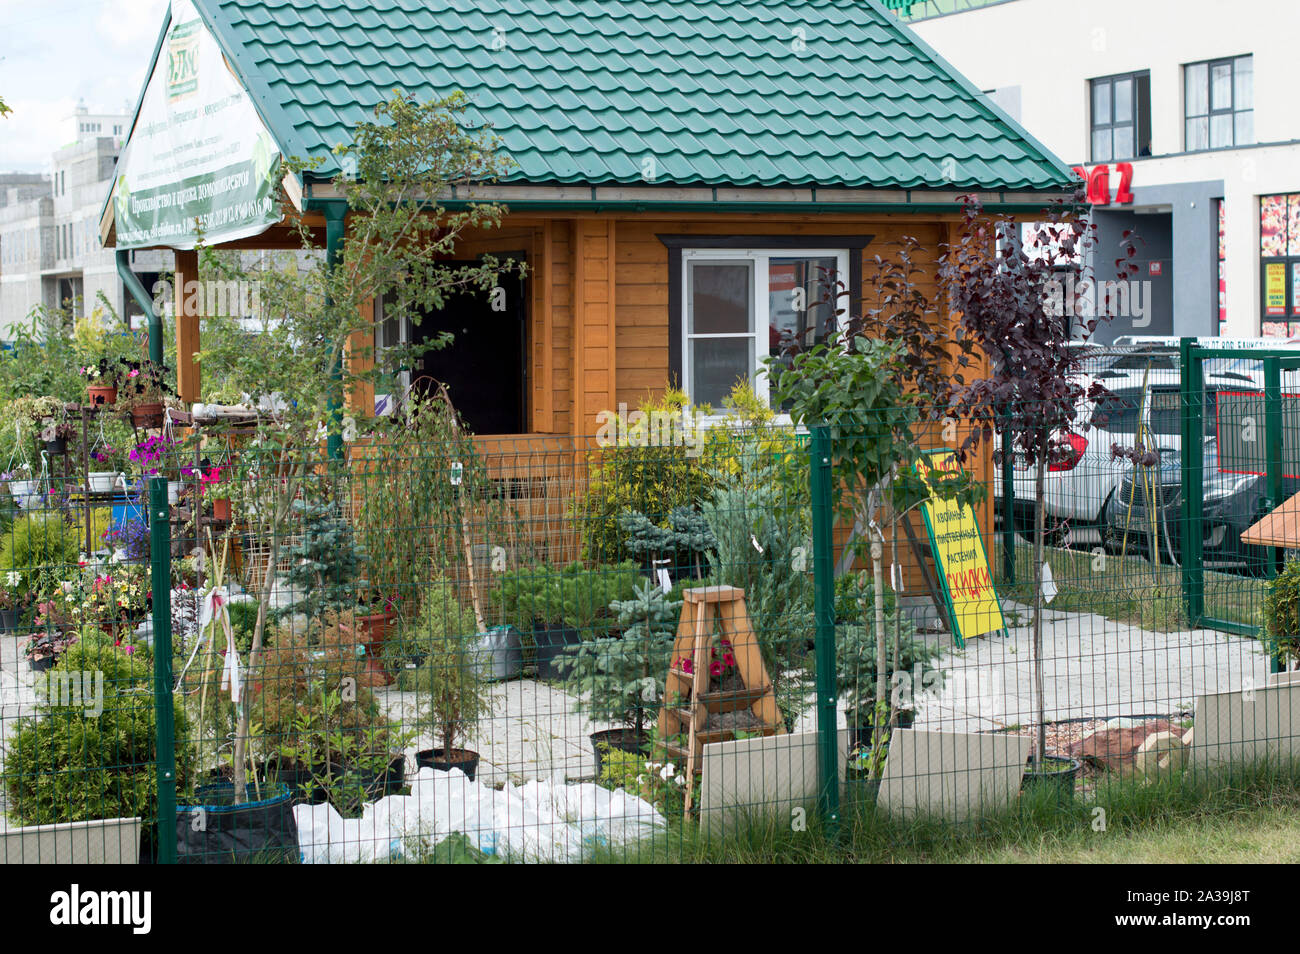 La exposición muestra de una casa de jardín de verano para la venta en el mercado de los jardineros. Rusia 2018 Foto de stock